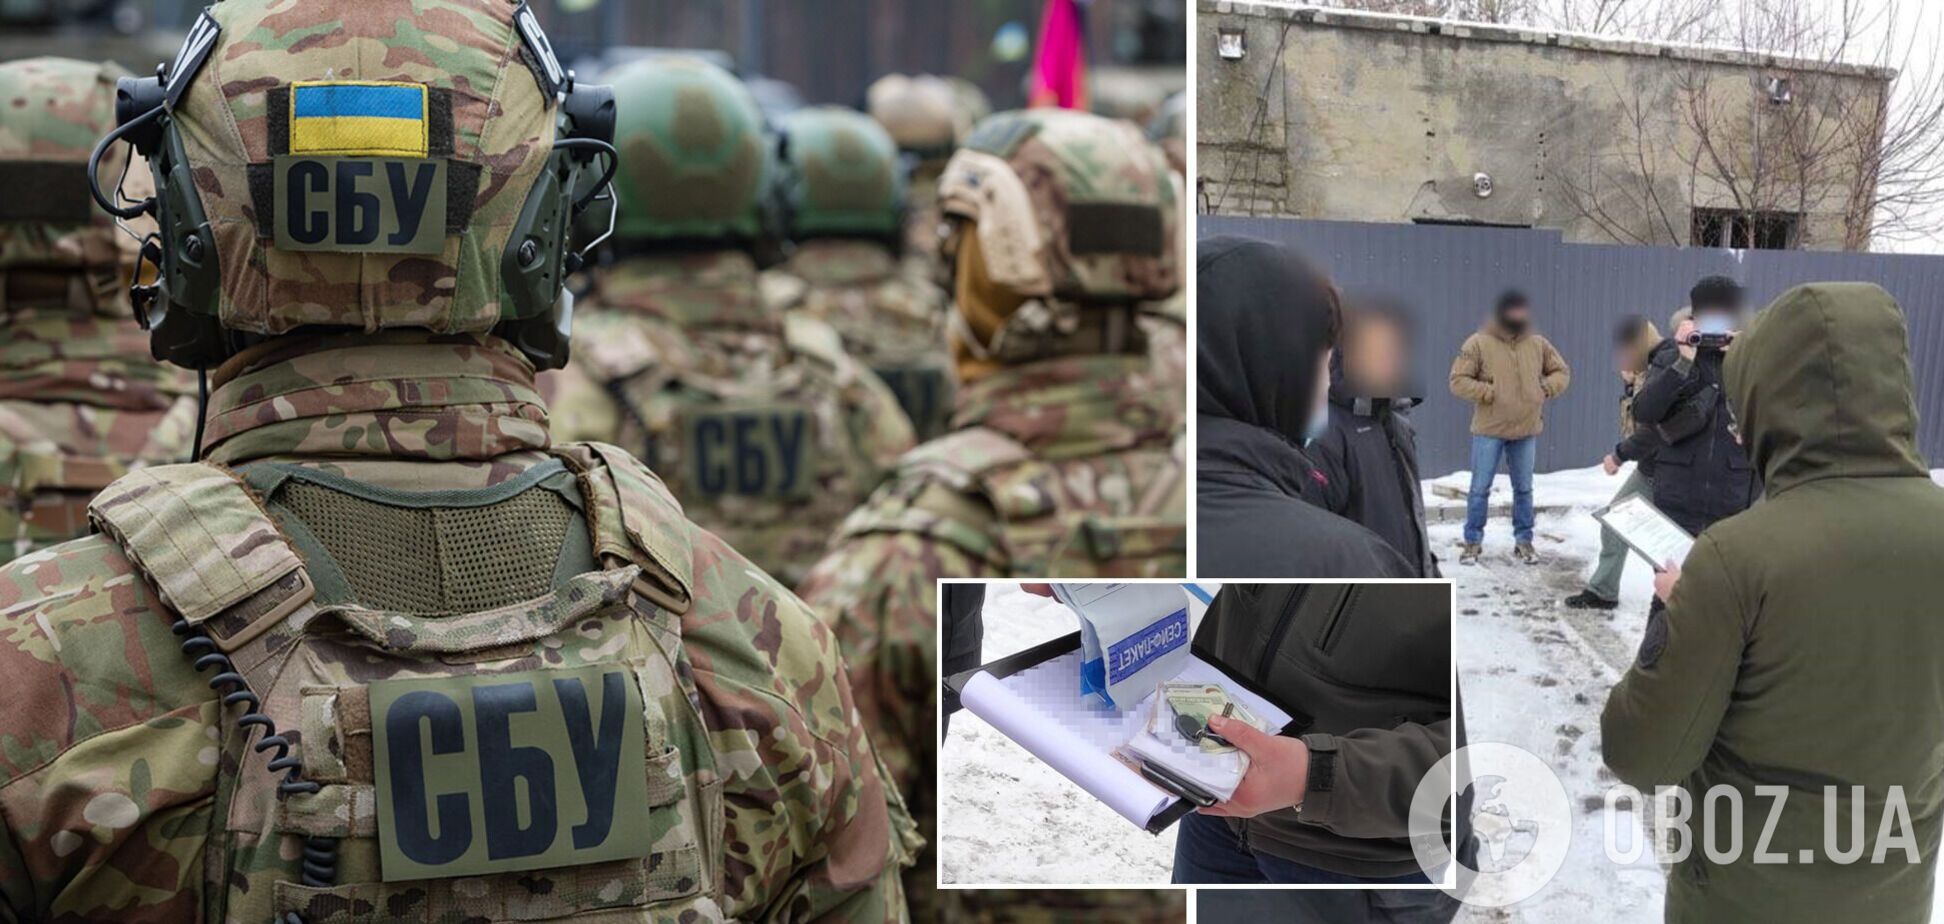 СБУ заявила о задержание в Одессе российского агента: планировал теракты в воинской части. Фото и видео